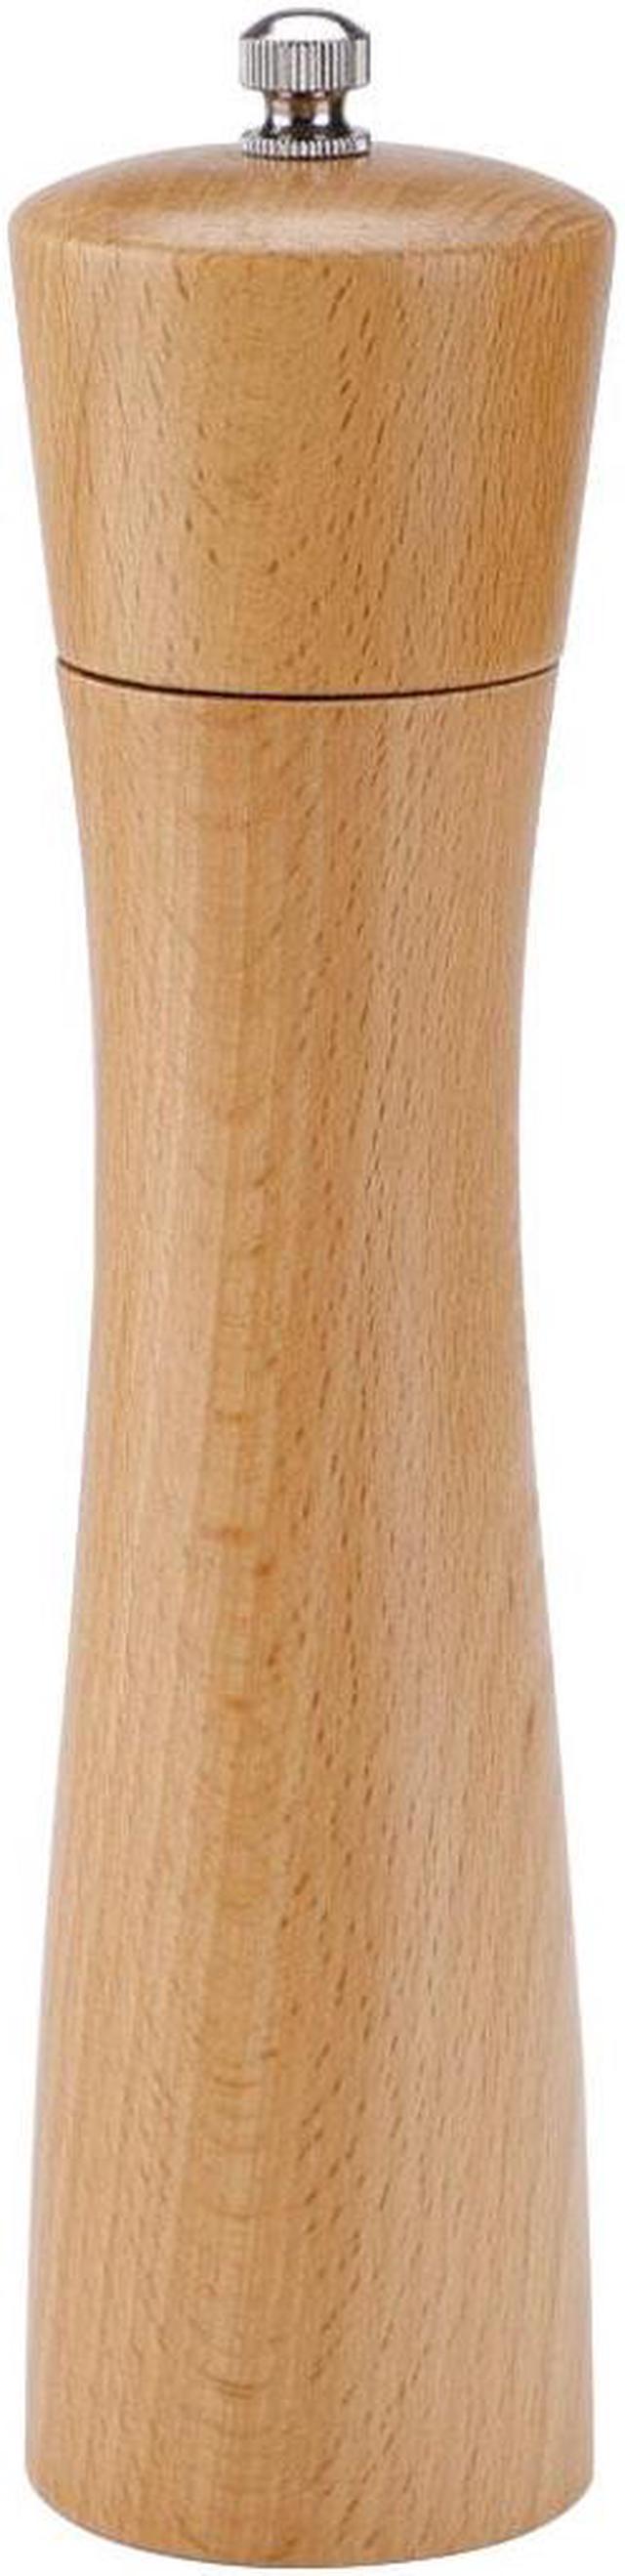 Unique Bargains 2pcs 8.5 Wooden Salt and Pepper Grinder Mills Shaker with Adjustable Coarseness